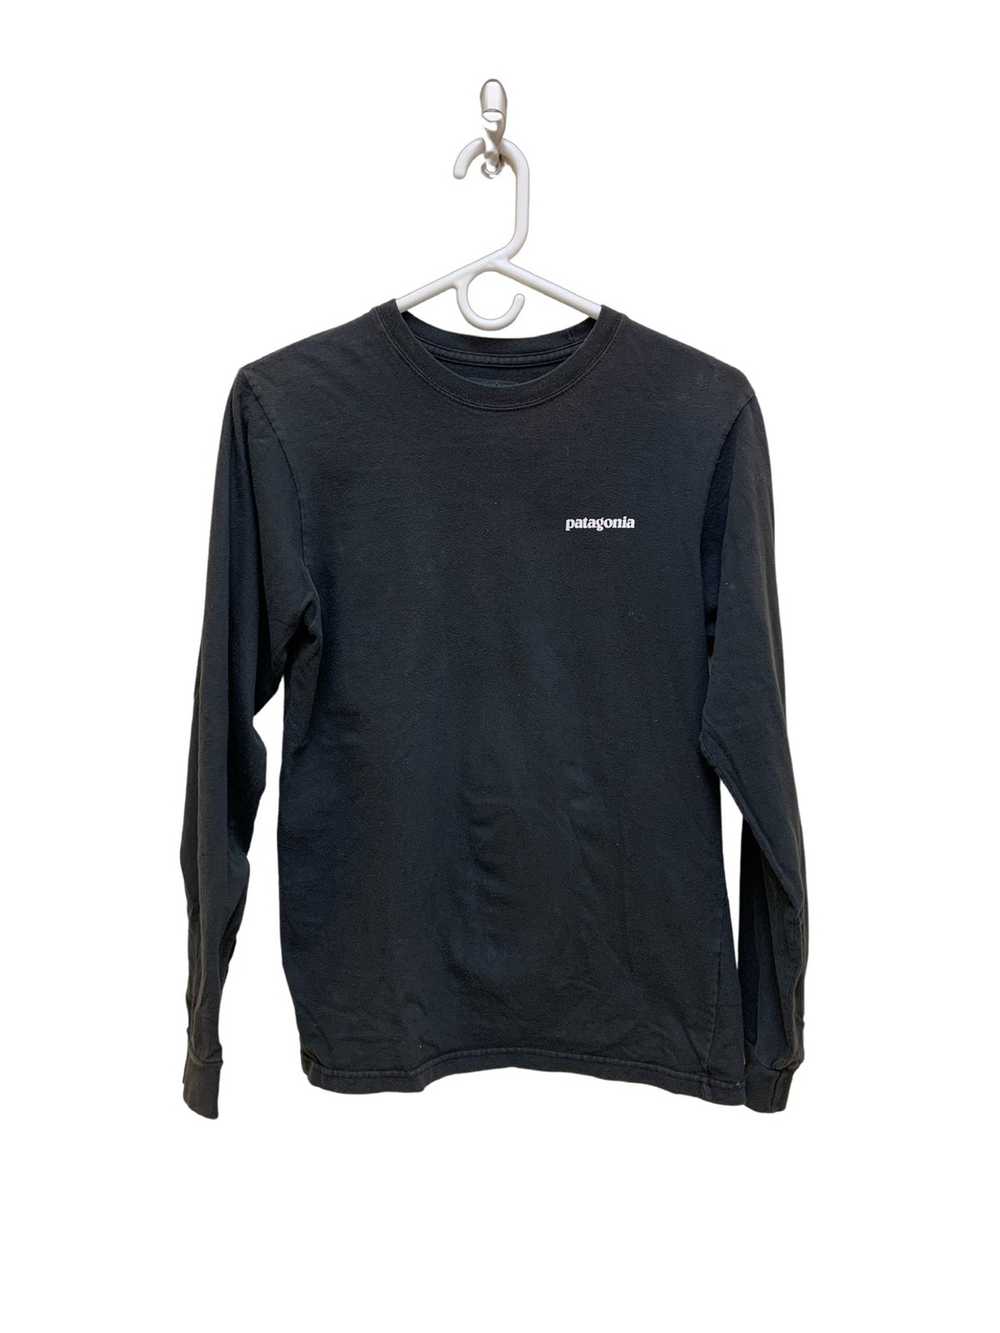 Patagonia Black Patagonia Long Sleeve T-shirt - image 1